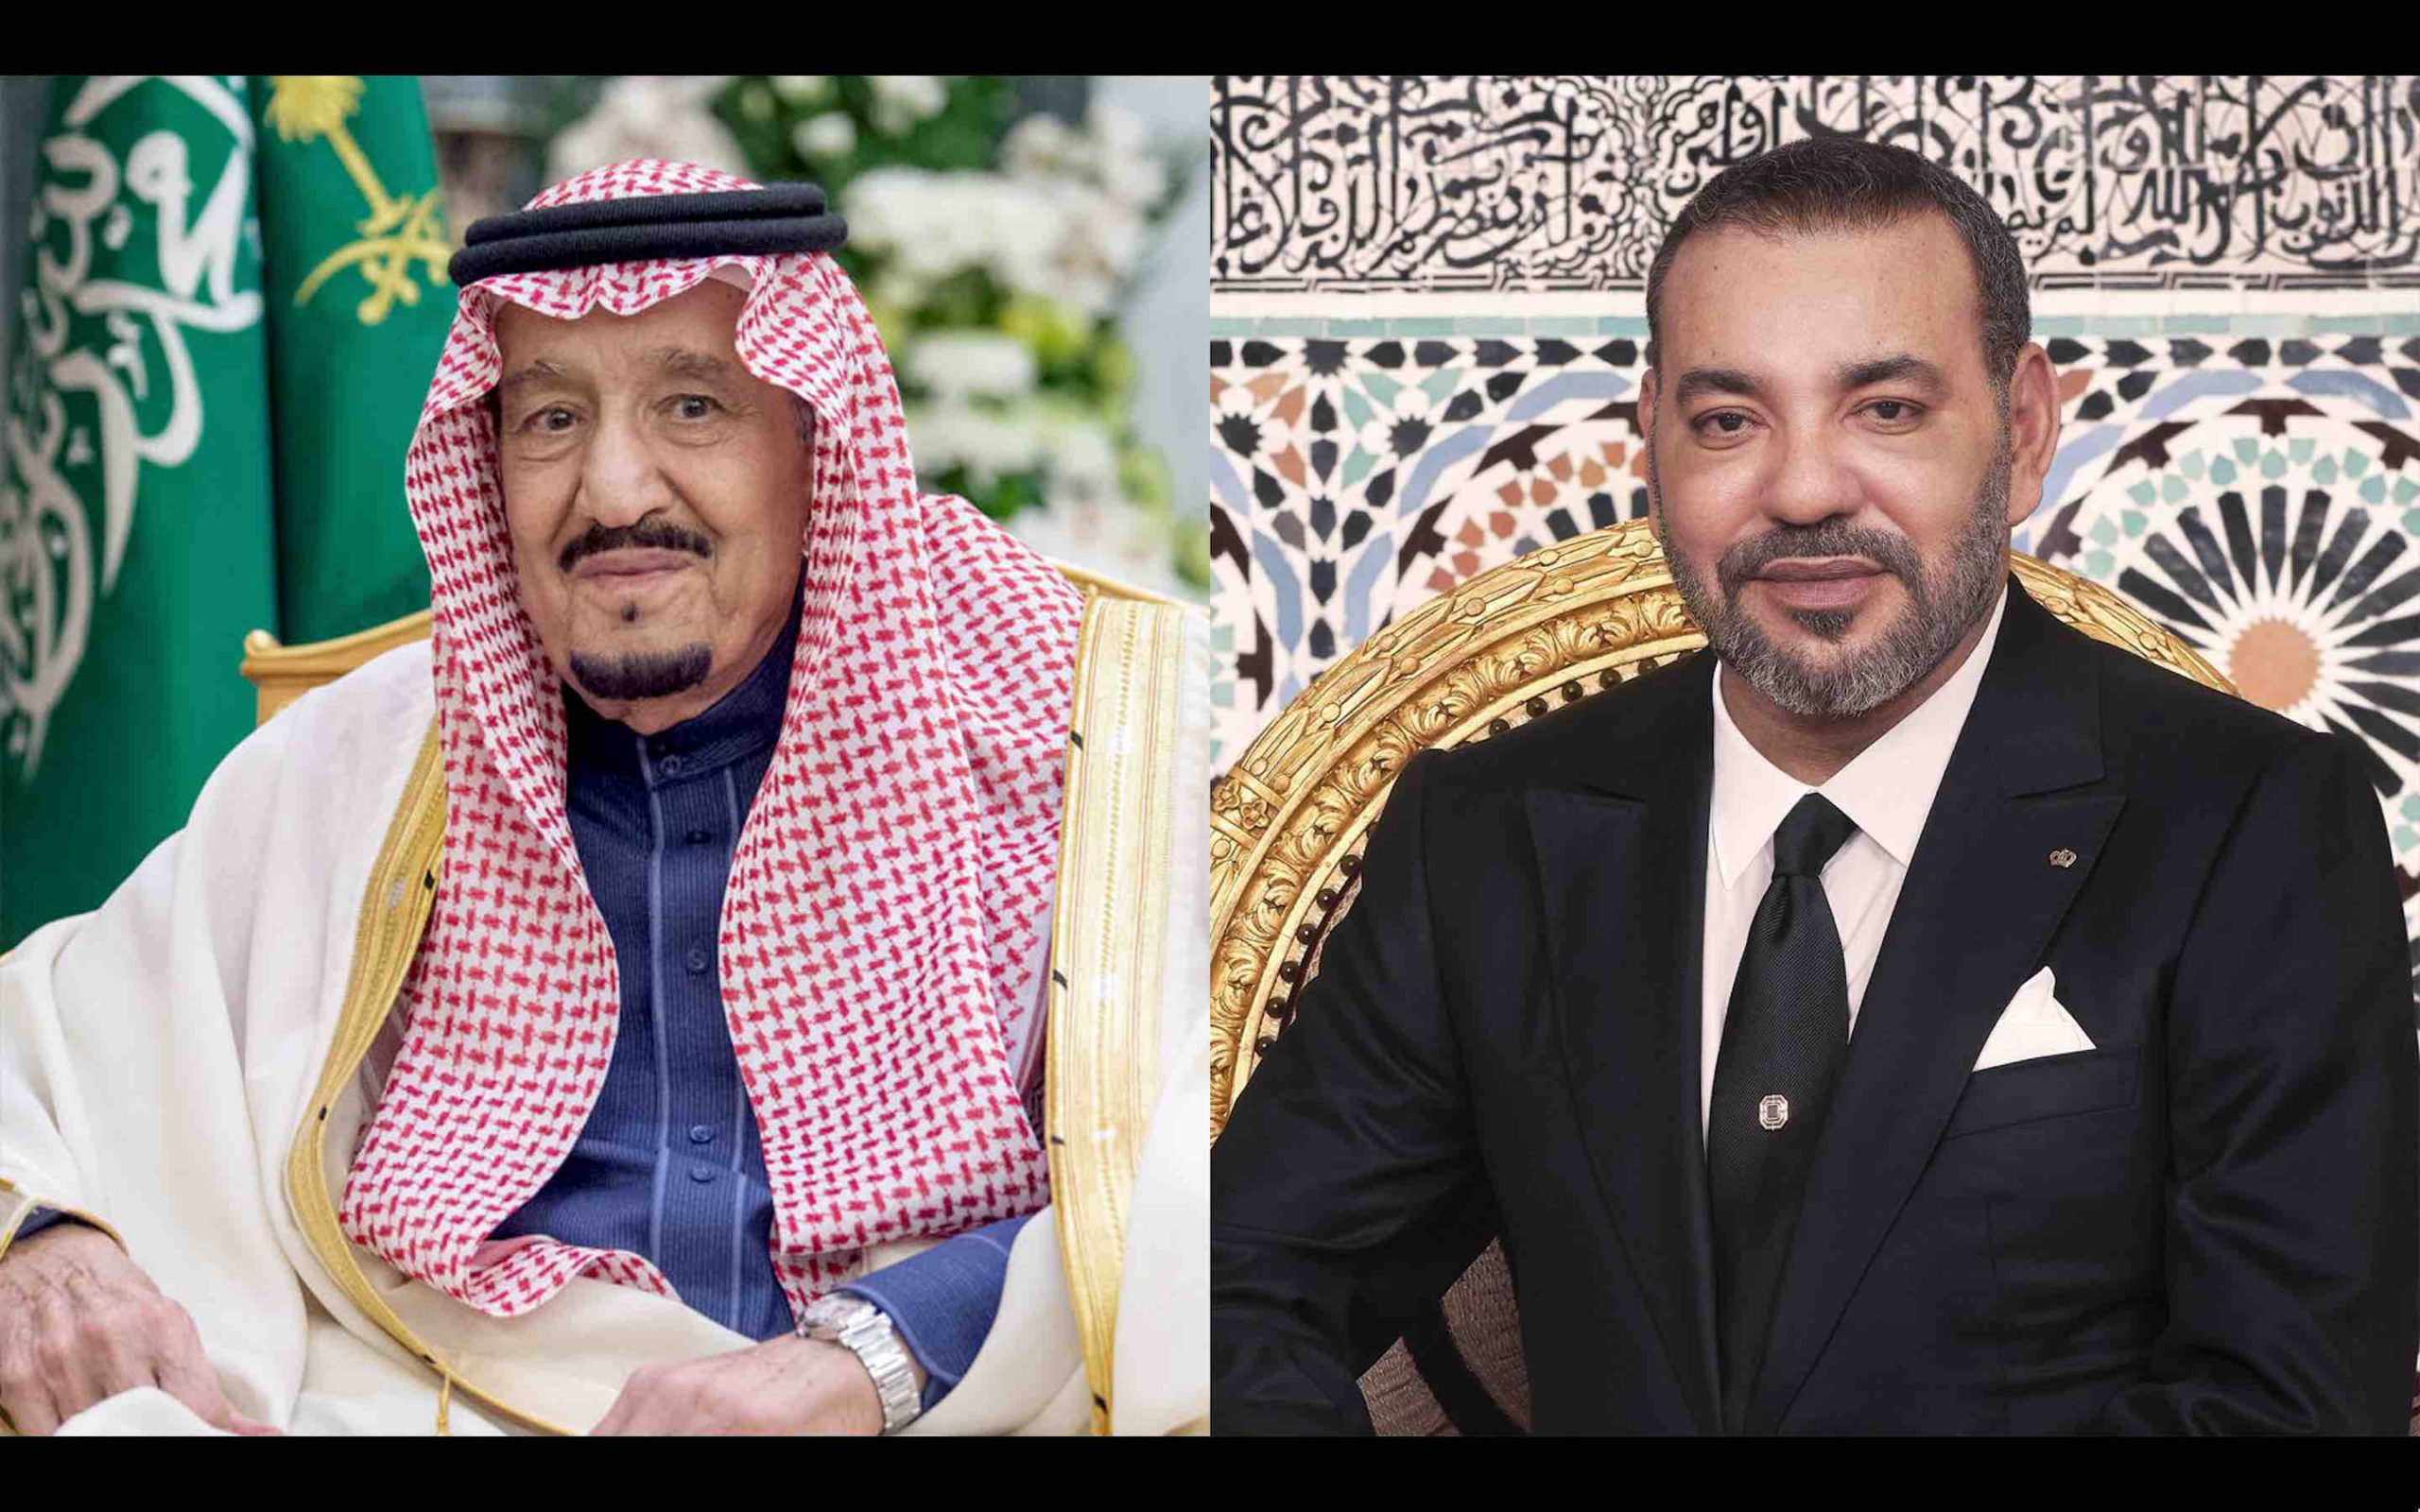 roi Mohammed 6 Maroc roi Salmane Ibn Abdelaziz Al-Saoud Arabie saoudite